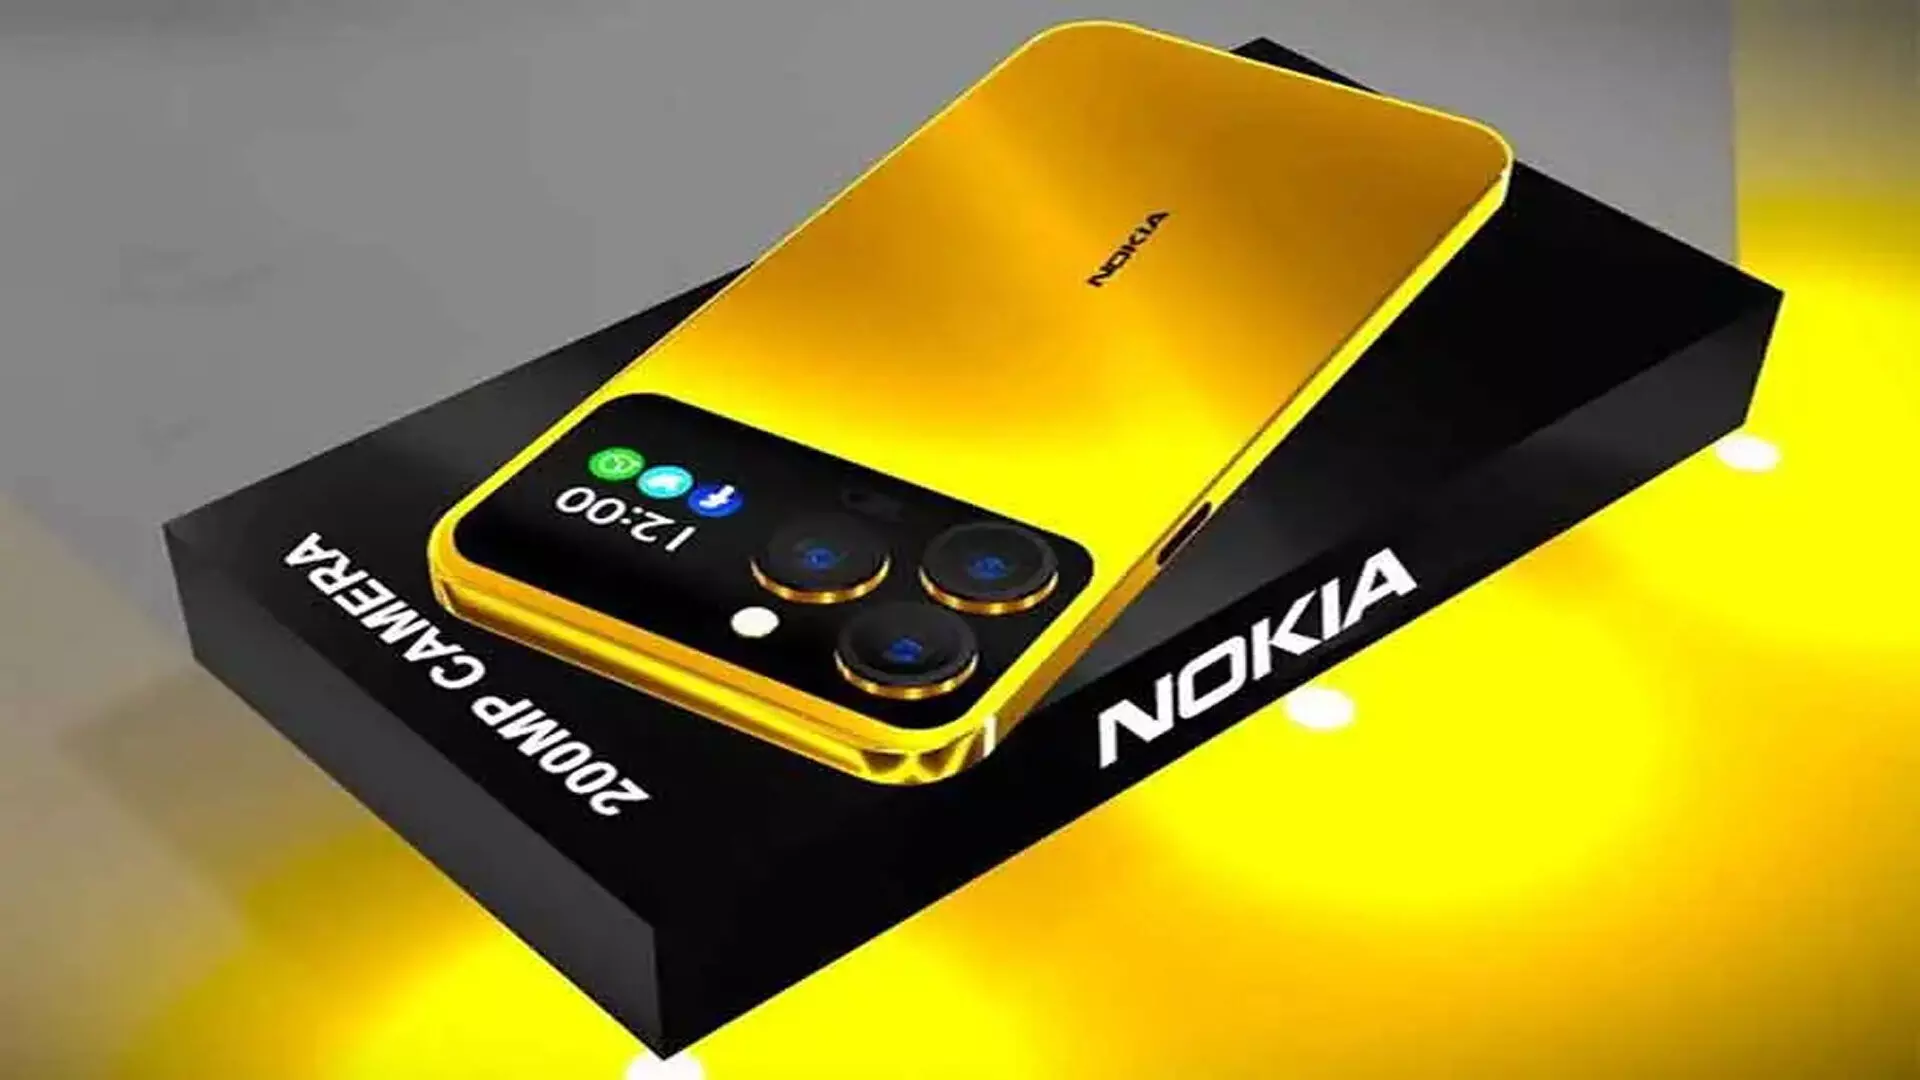 Nokia 1100: इसमें मिल रही 6200mAh बैटरी बैकअप, जानिए फीचर्स